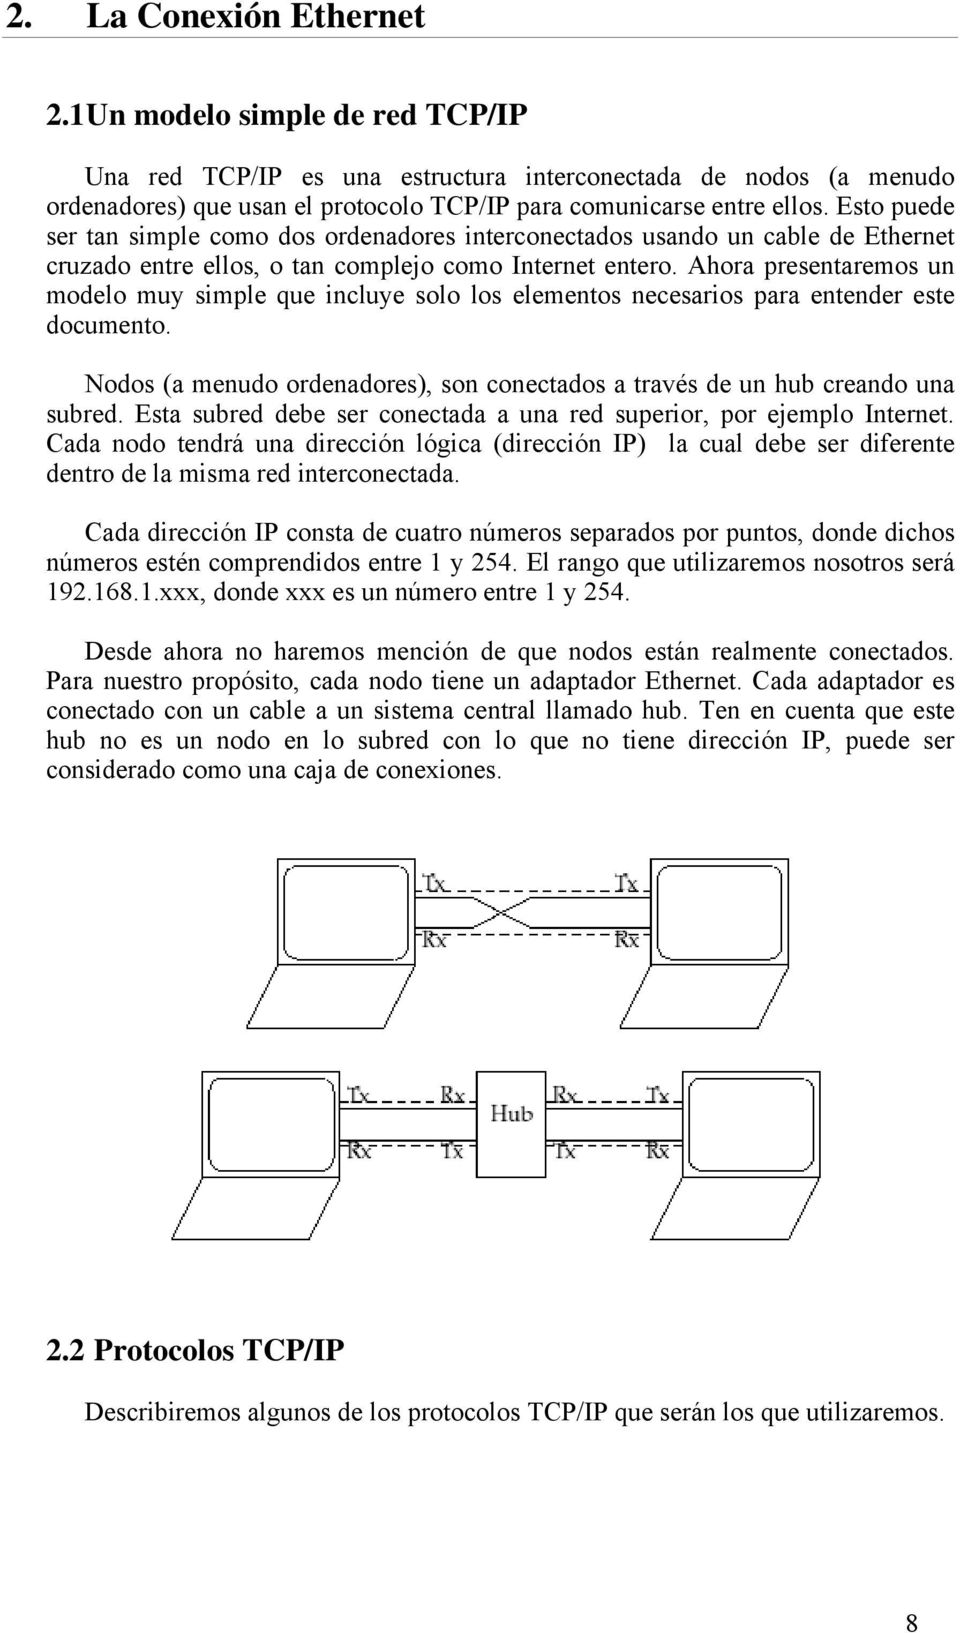 Ahora presentaremos un modelo muy simple que incluye solo los elementos necesarios para entender este documento. Nodos (a menudo ordenadores), son conectados a través de un hub creando una subred.